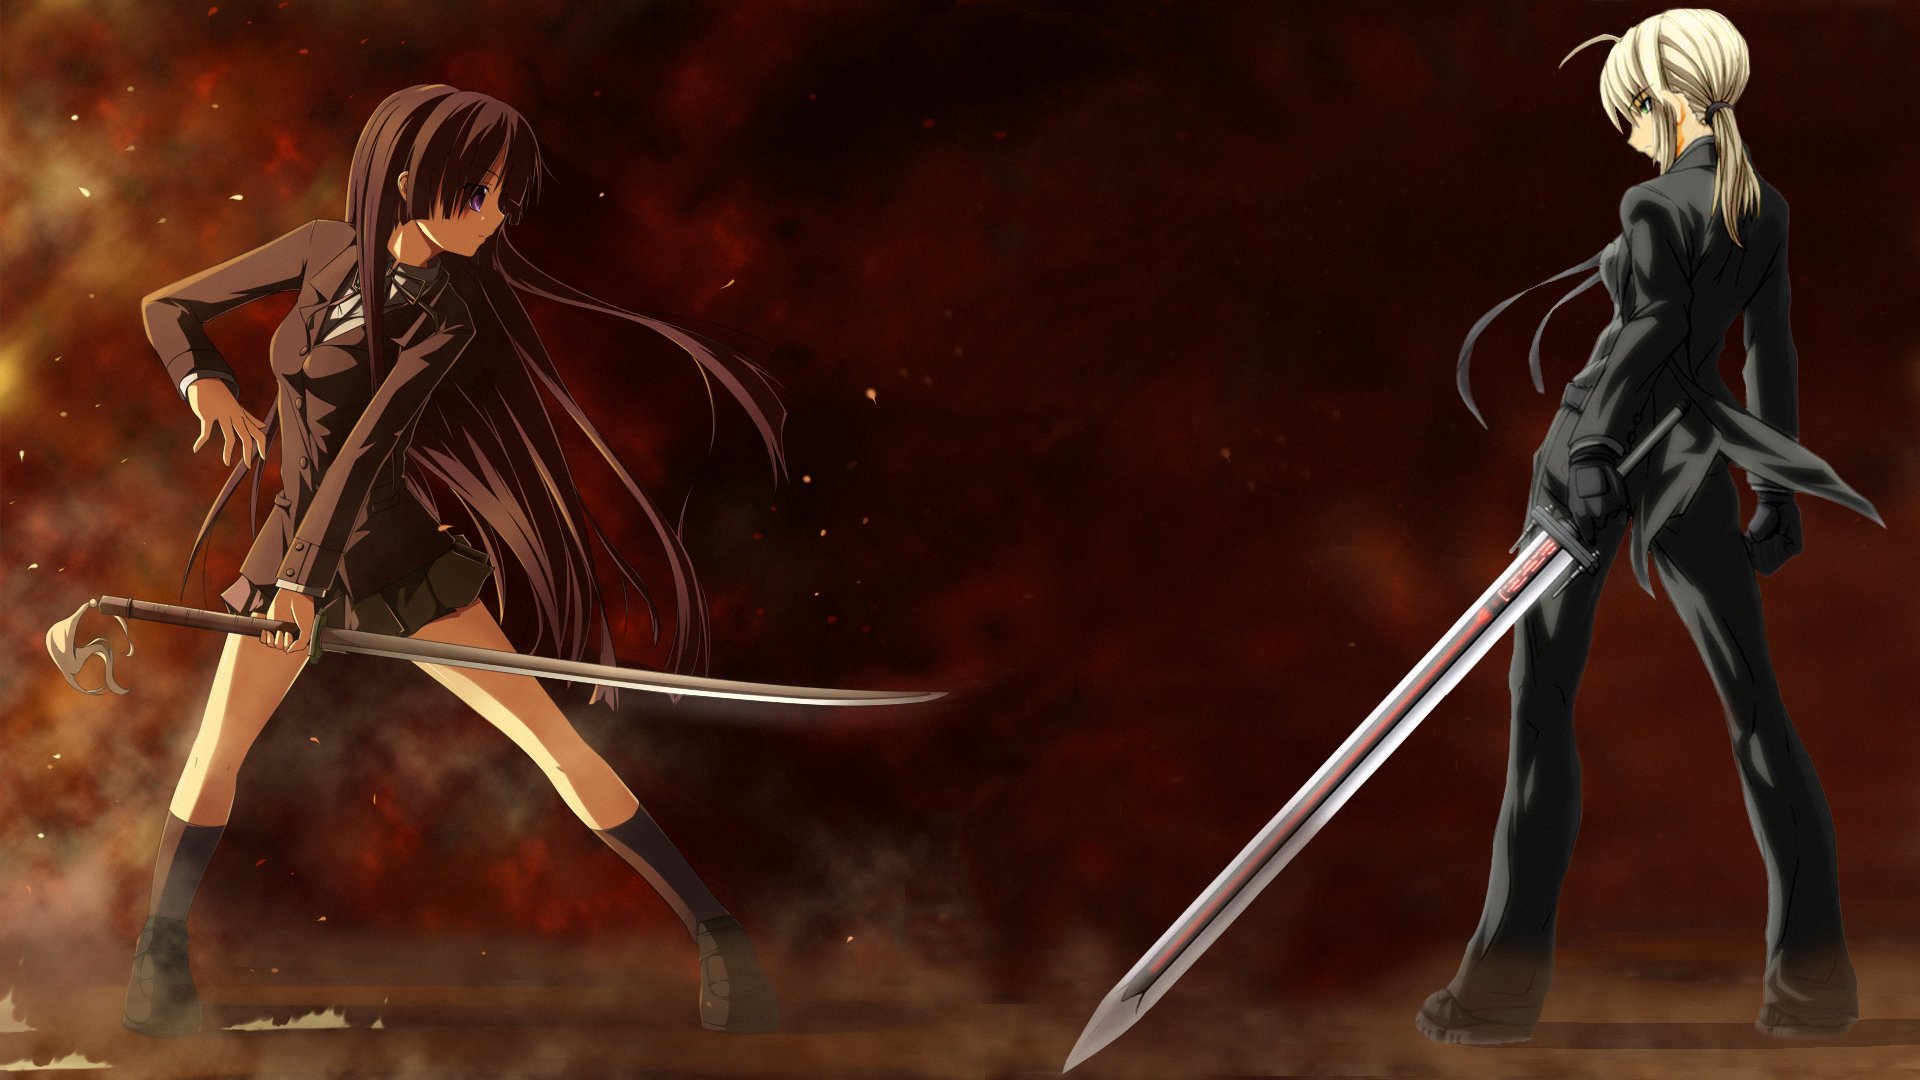 Anime Girl Sword Fight - HD Wallpaper 